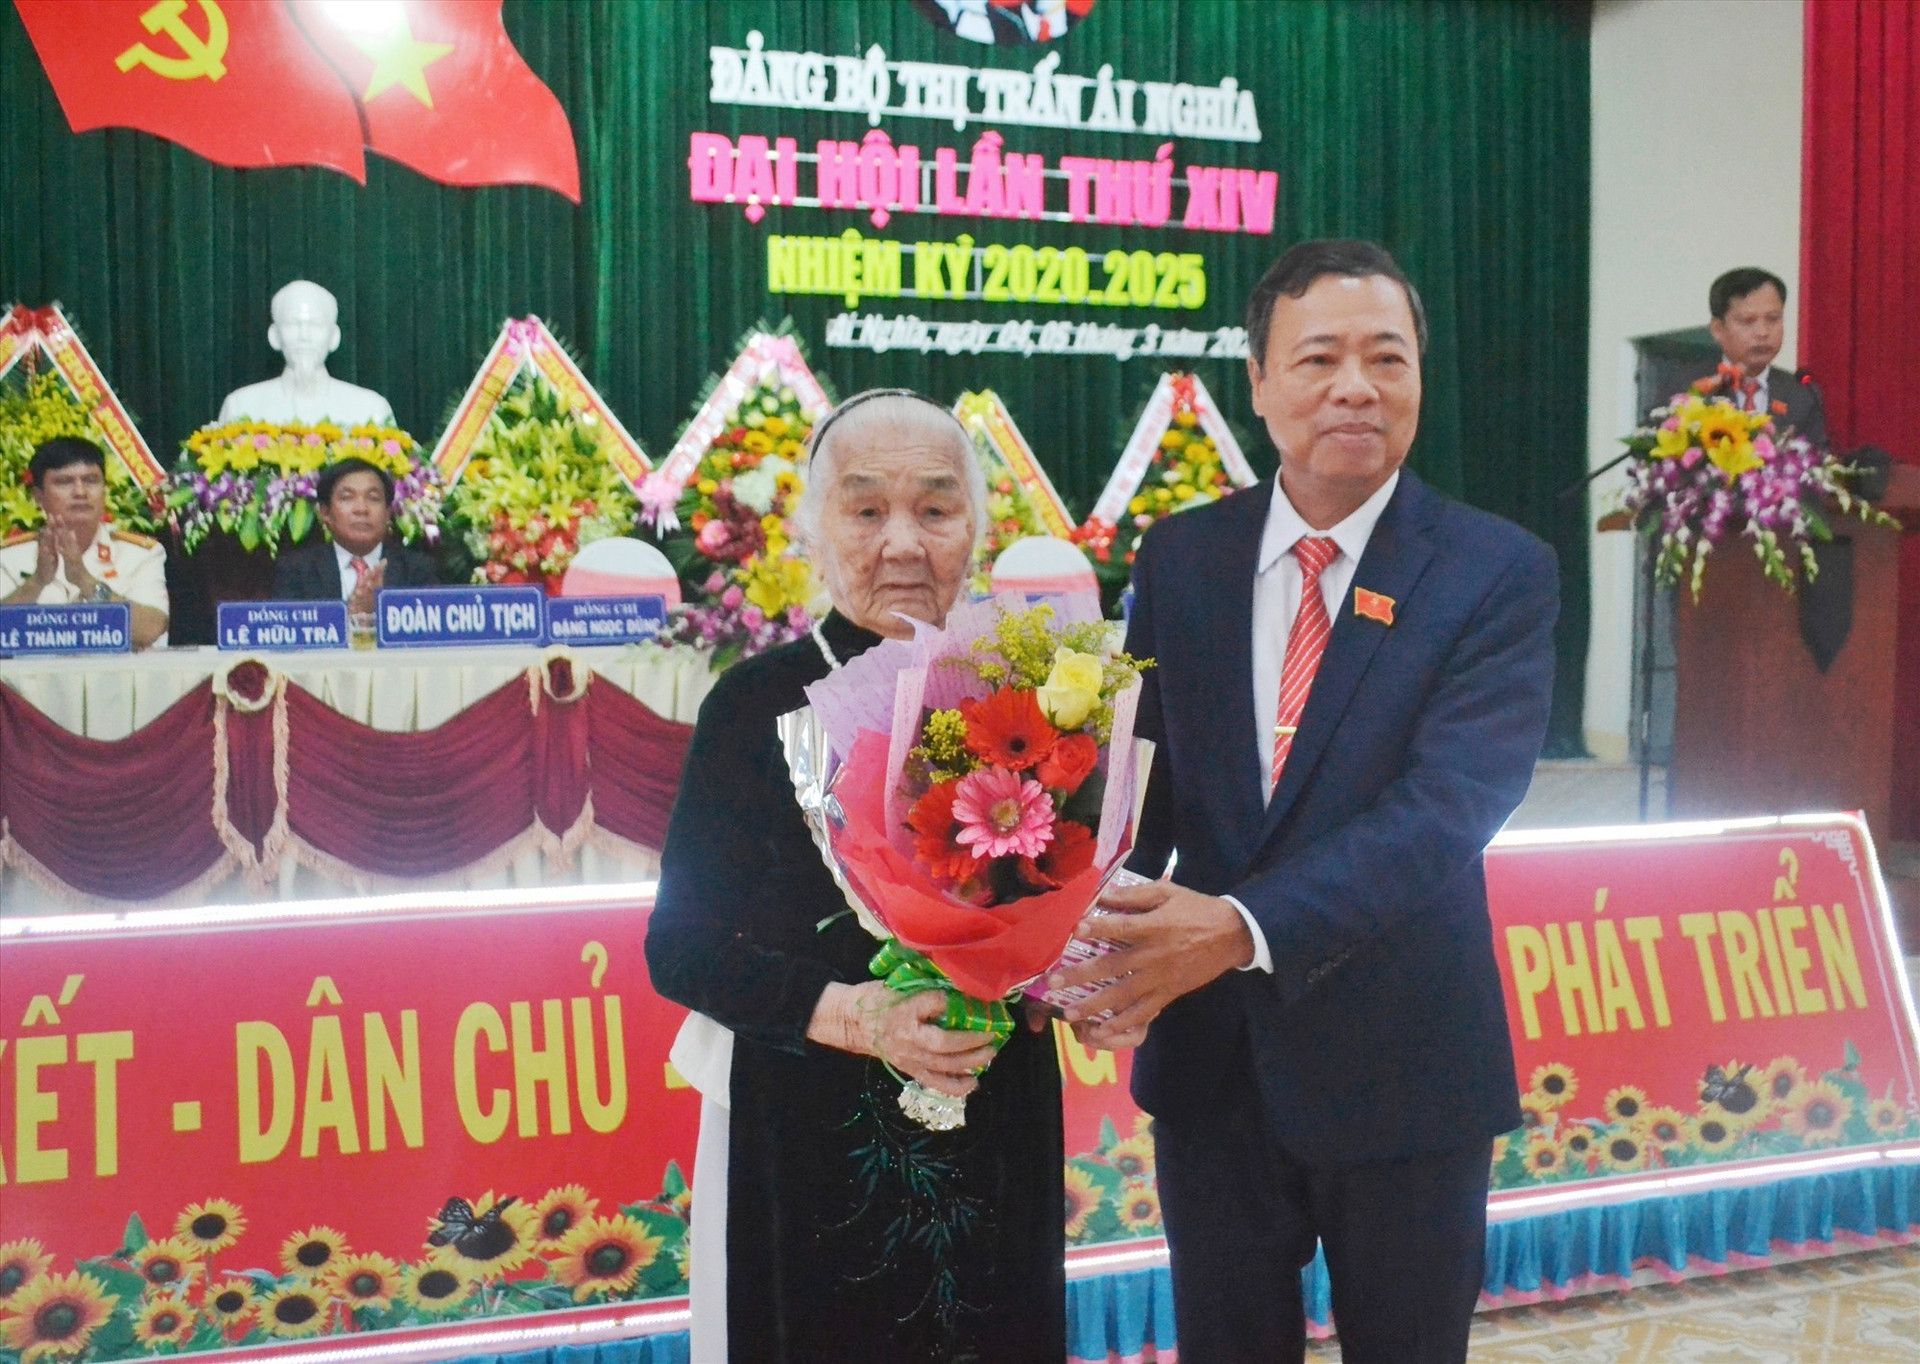 Tặng hoa và quà cho đại diện Bà mẹ Việt Nam anh hùng tại đại hội. Ảnh: C.T